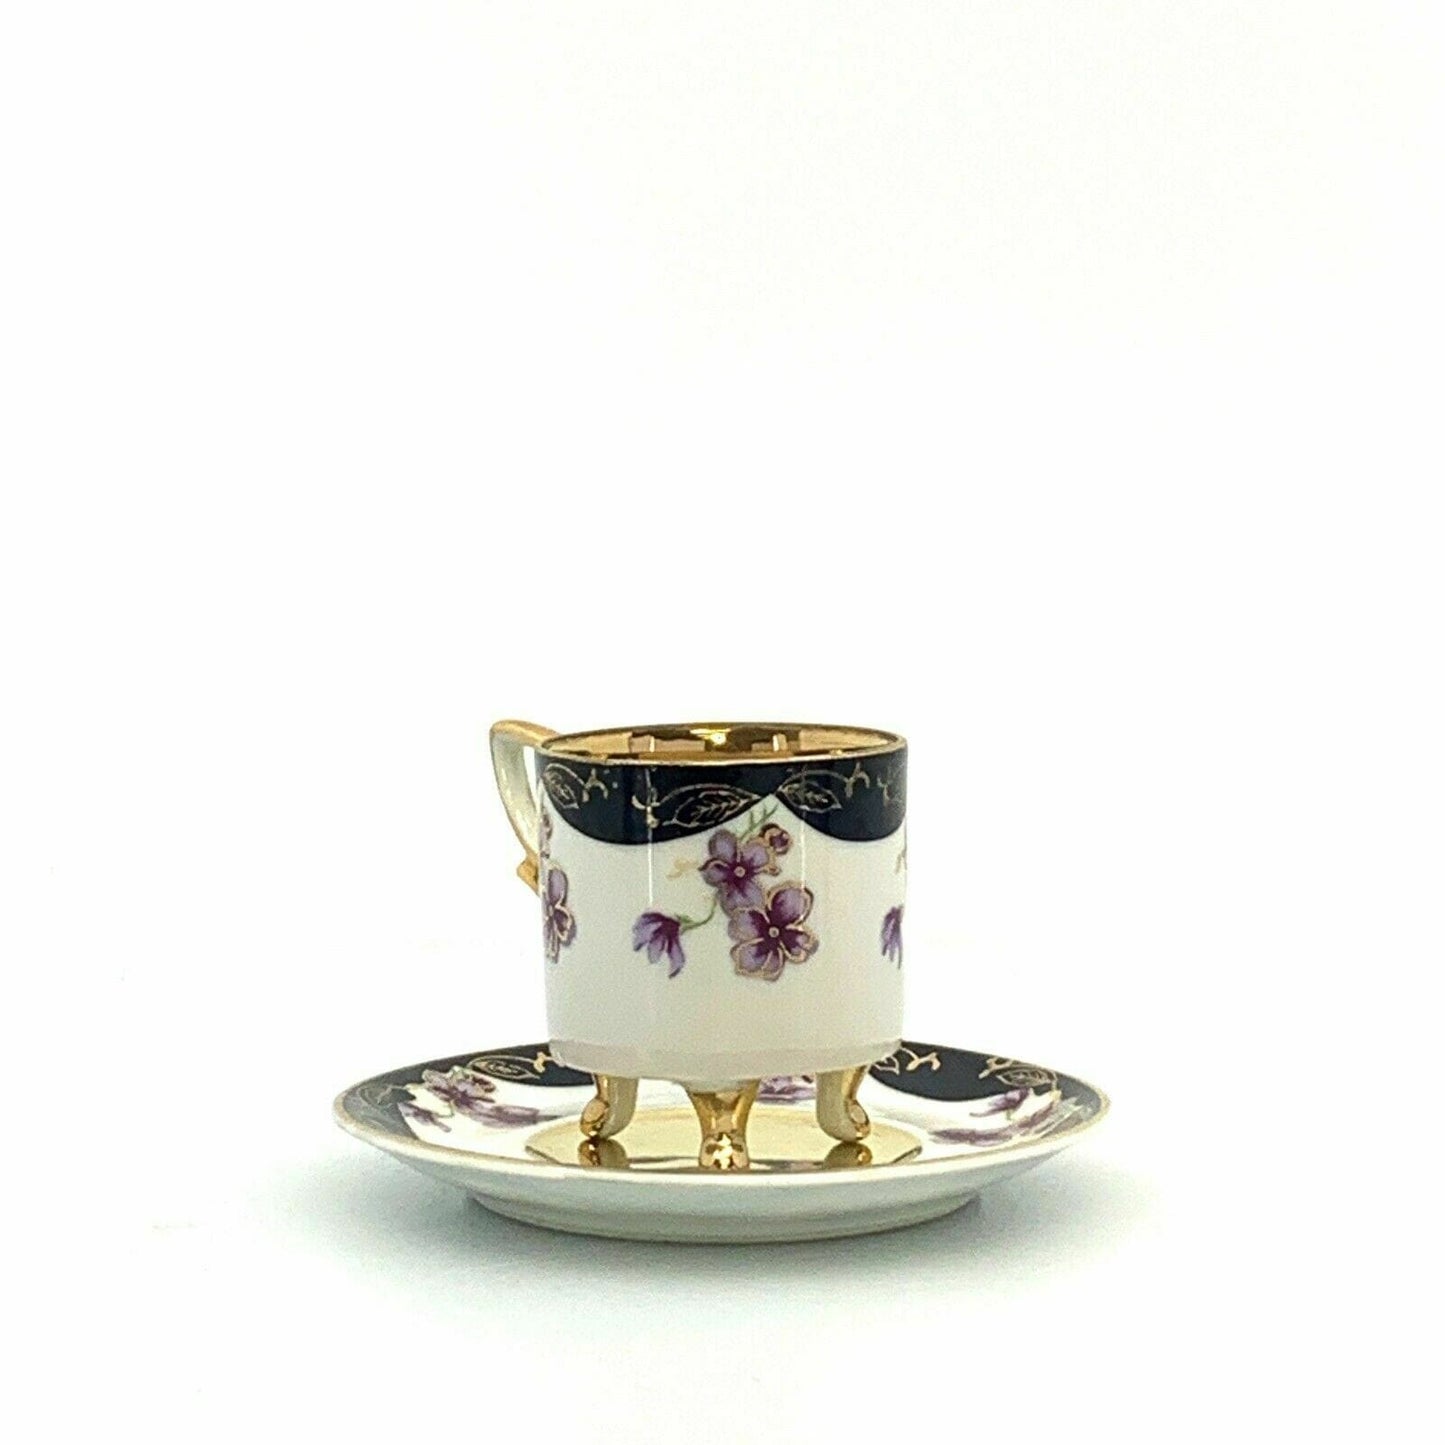 Lefton China Sweet Violets Vintage Hand Painted Porcelain Cup & Saucer Set